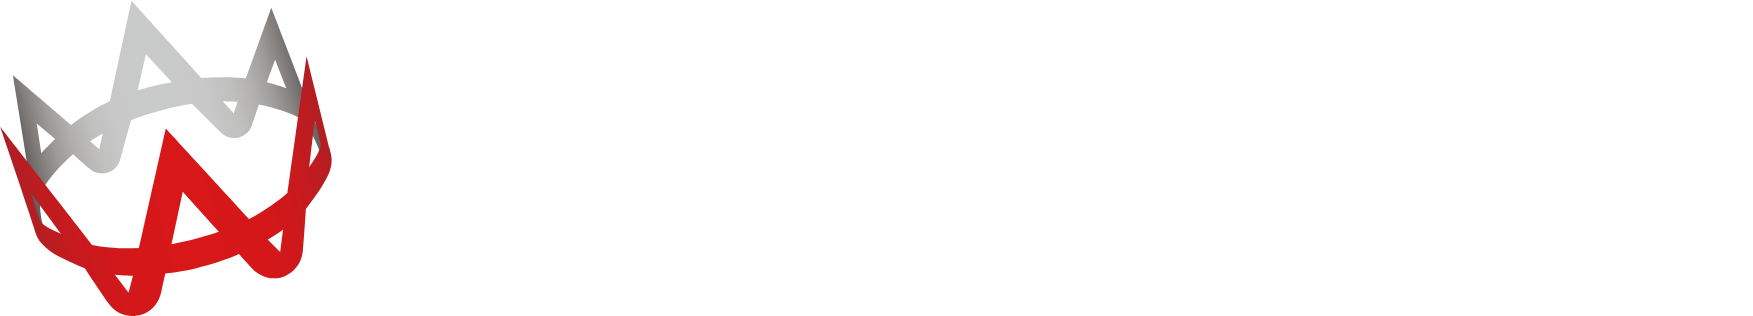 Ateam logo large for dark backgrounds (transparent PNG)